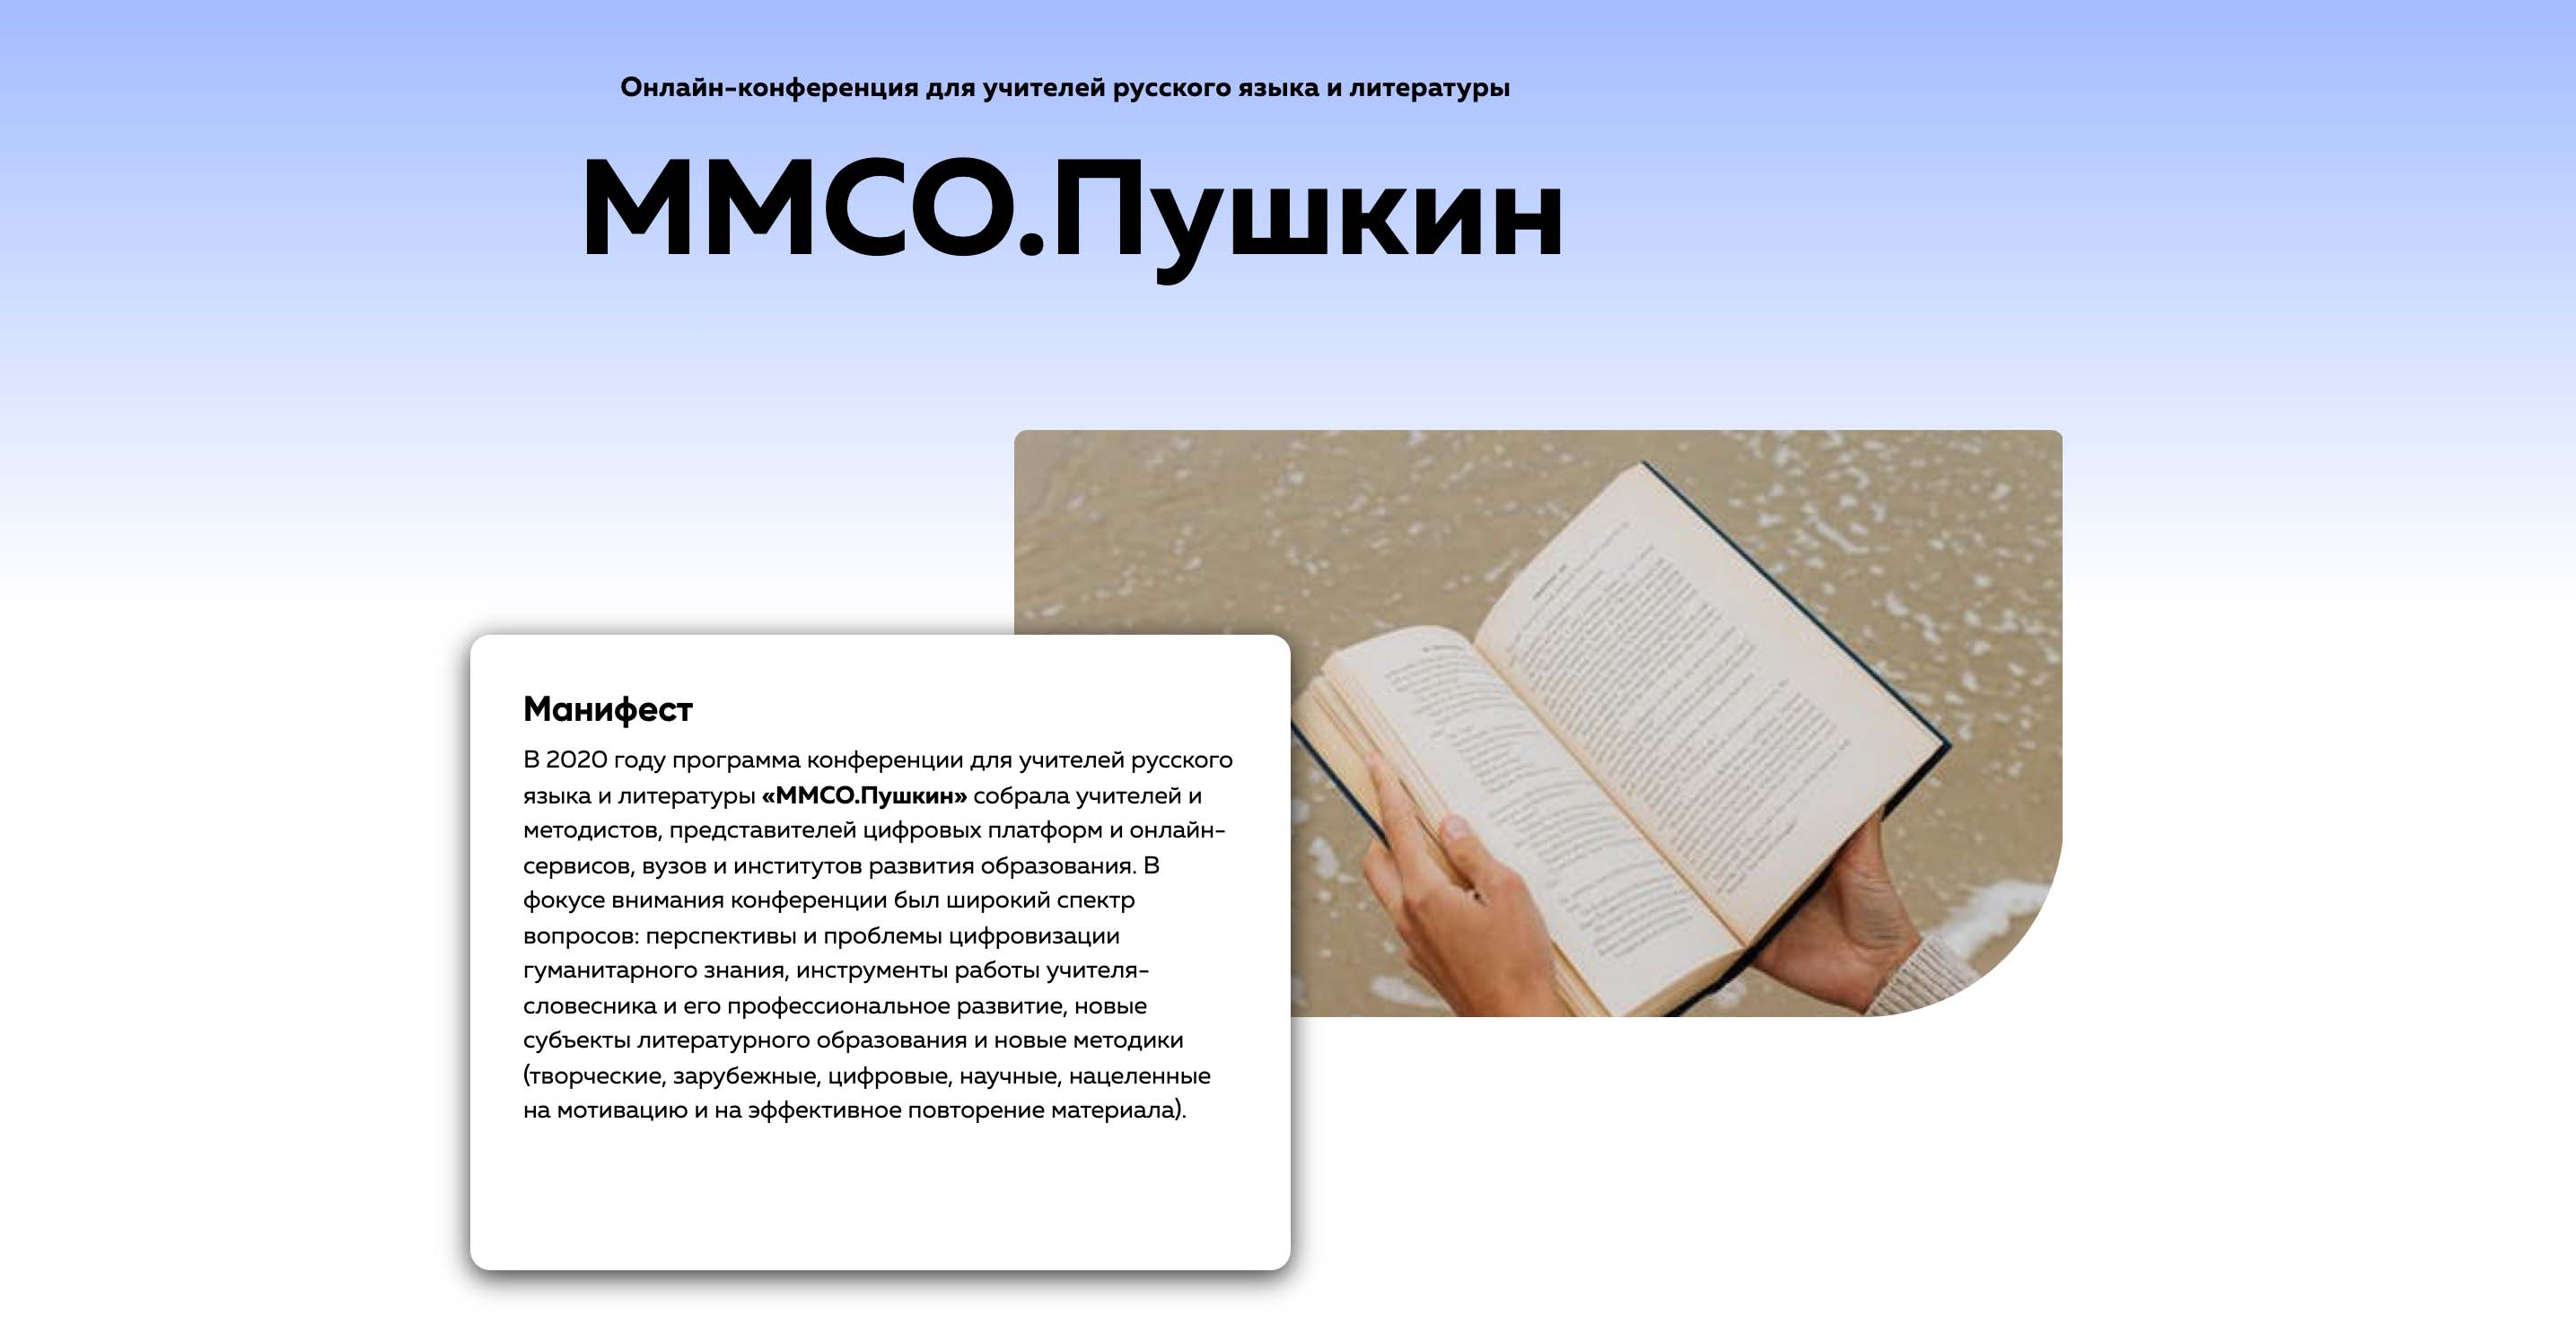 ММСО.Пушкин «Субъектность в школьном литературном образовании»